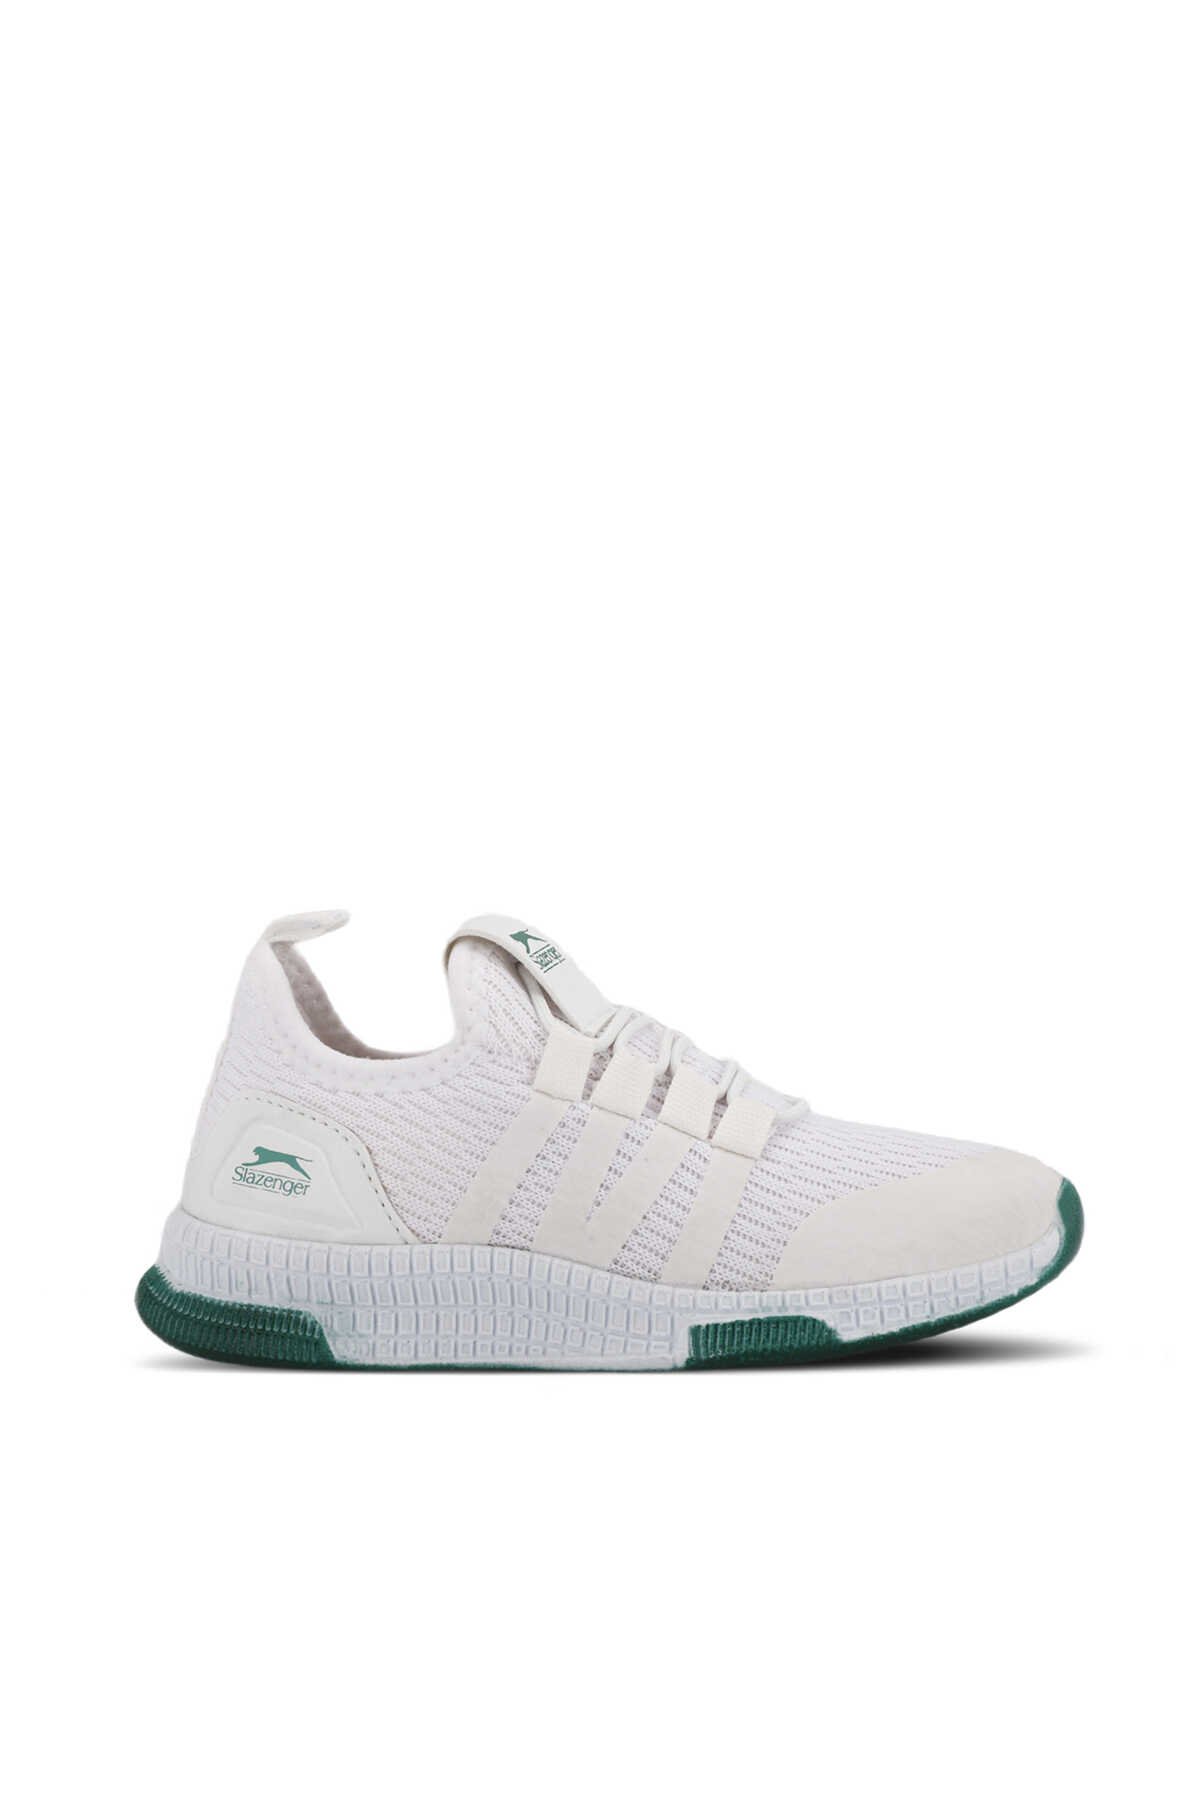 Slazenger - EXPO Sneaker Unisex Çocuk Ayakkabı Beyaz / Yeşil